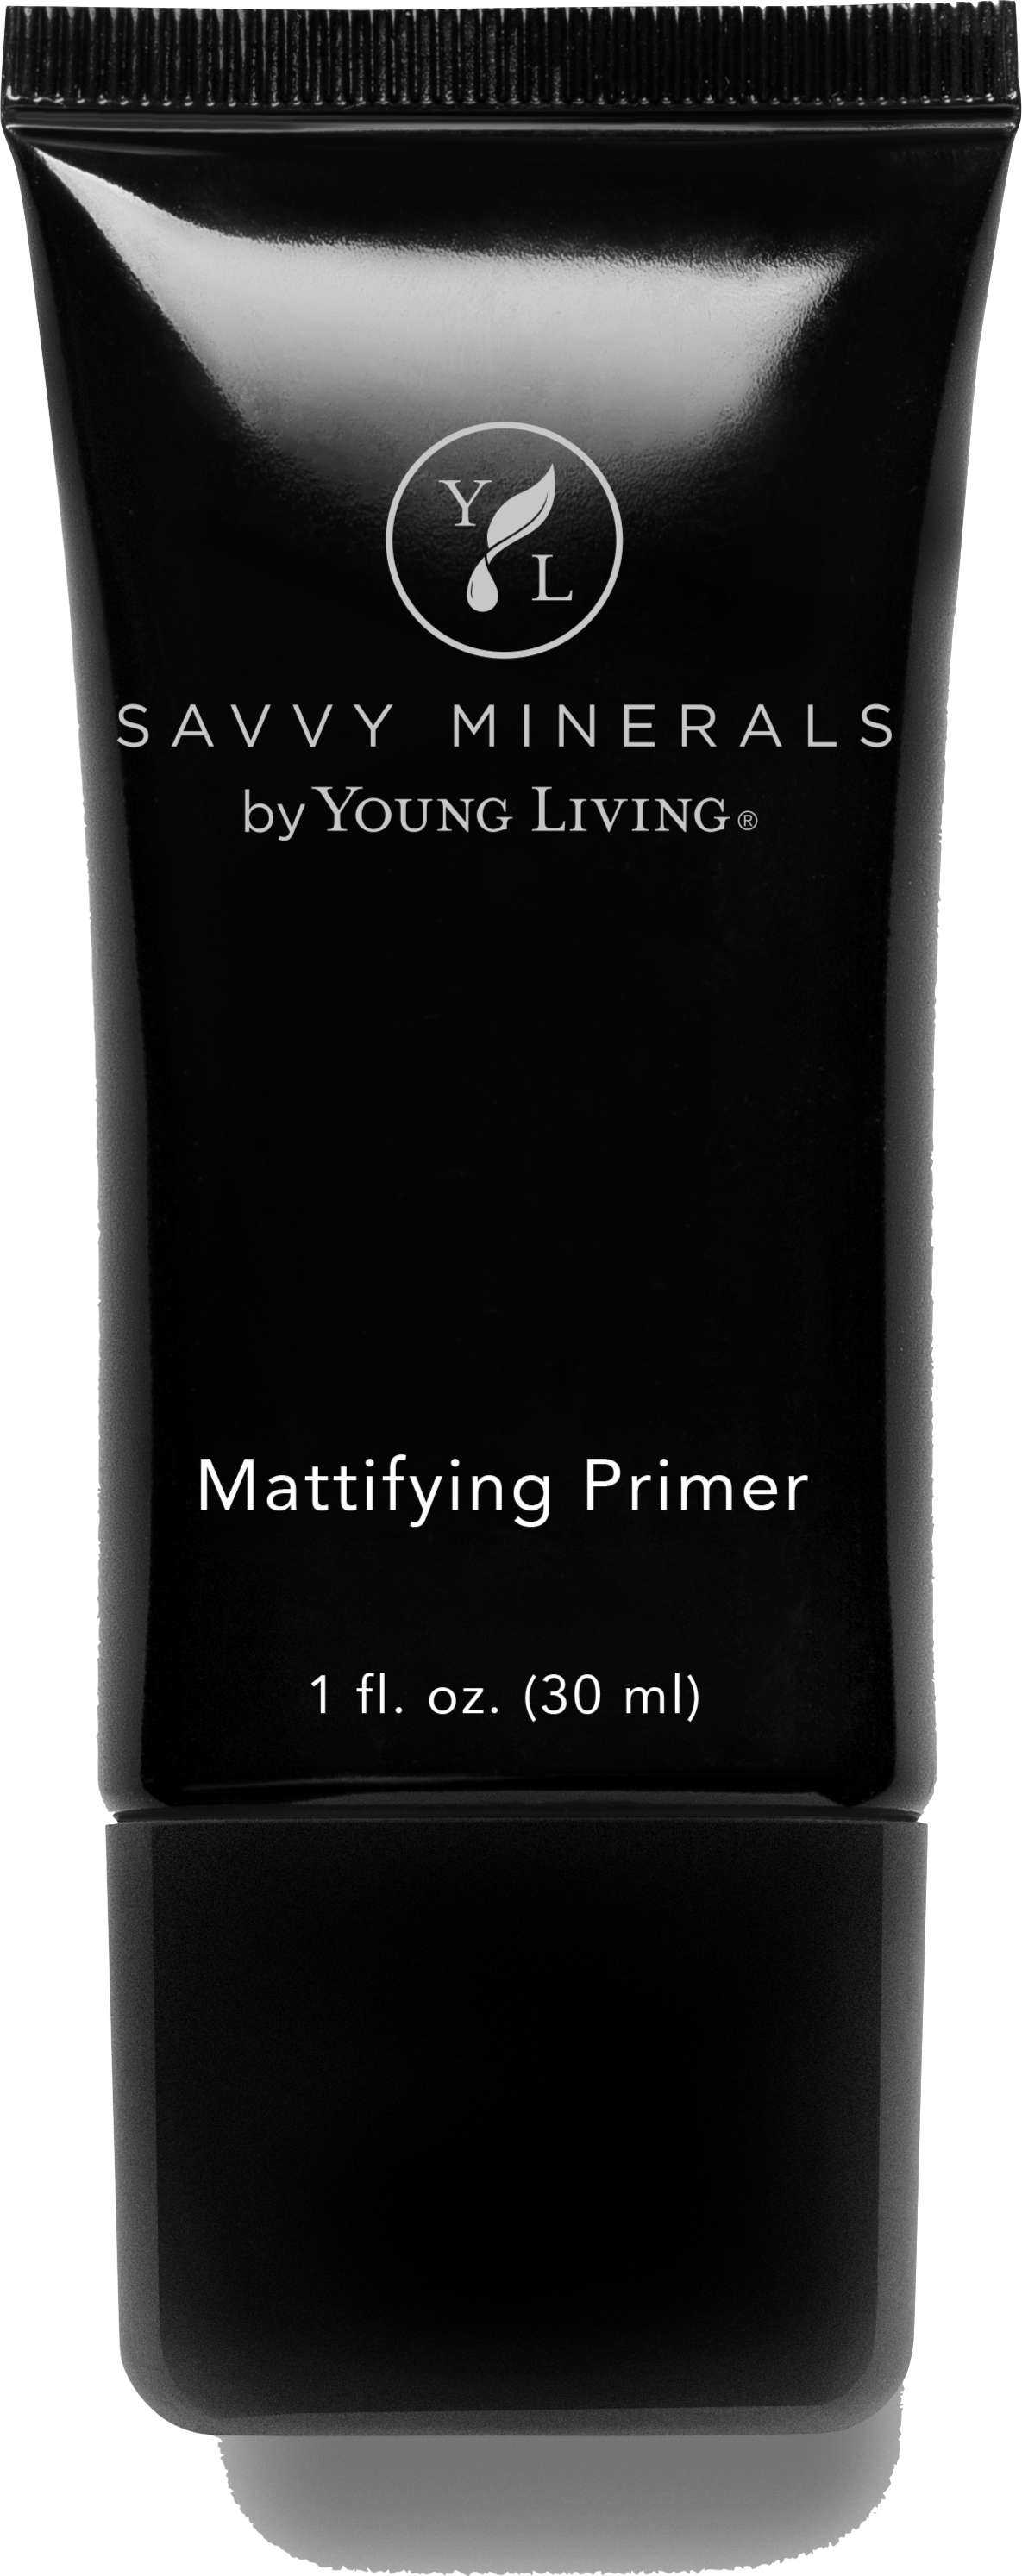 Mattifying Primer Silo.png